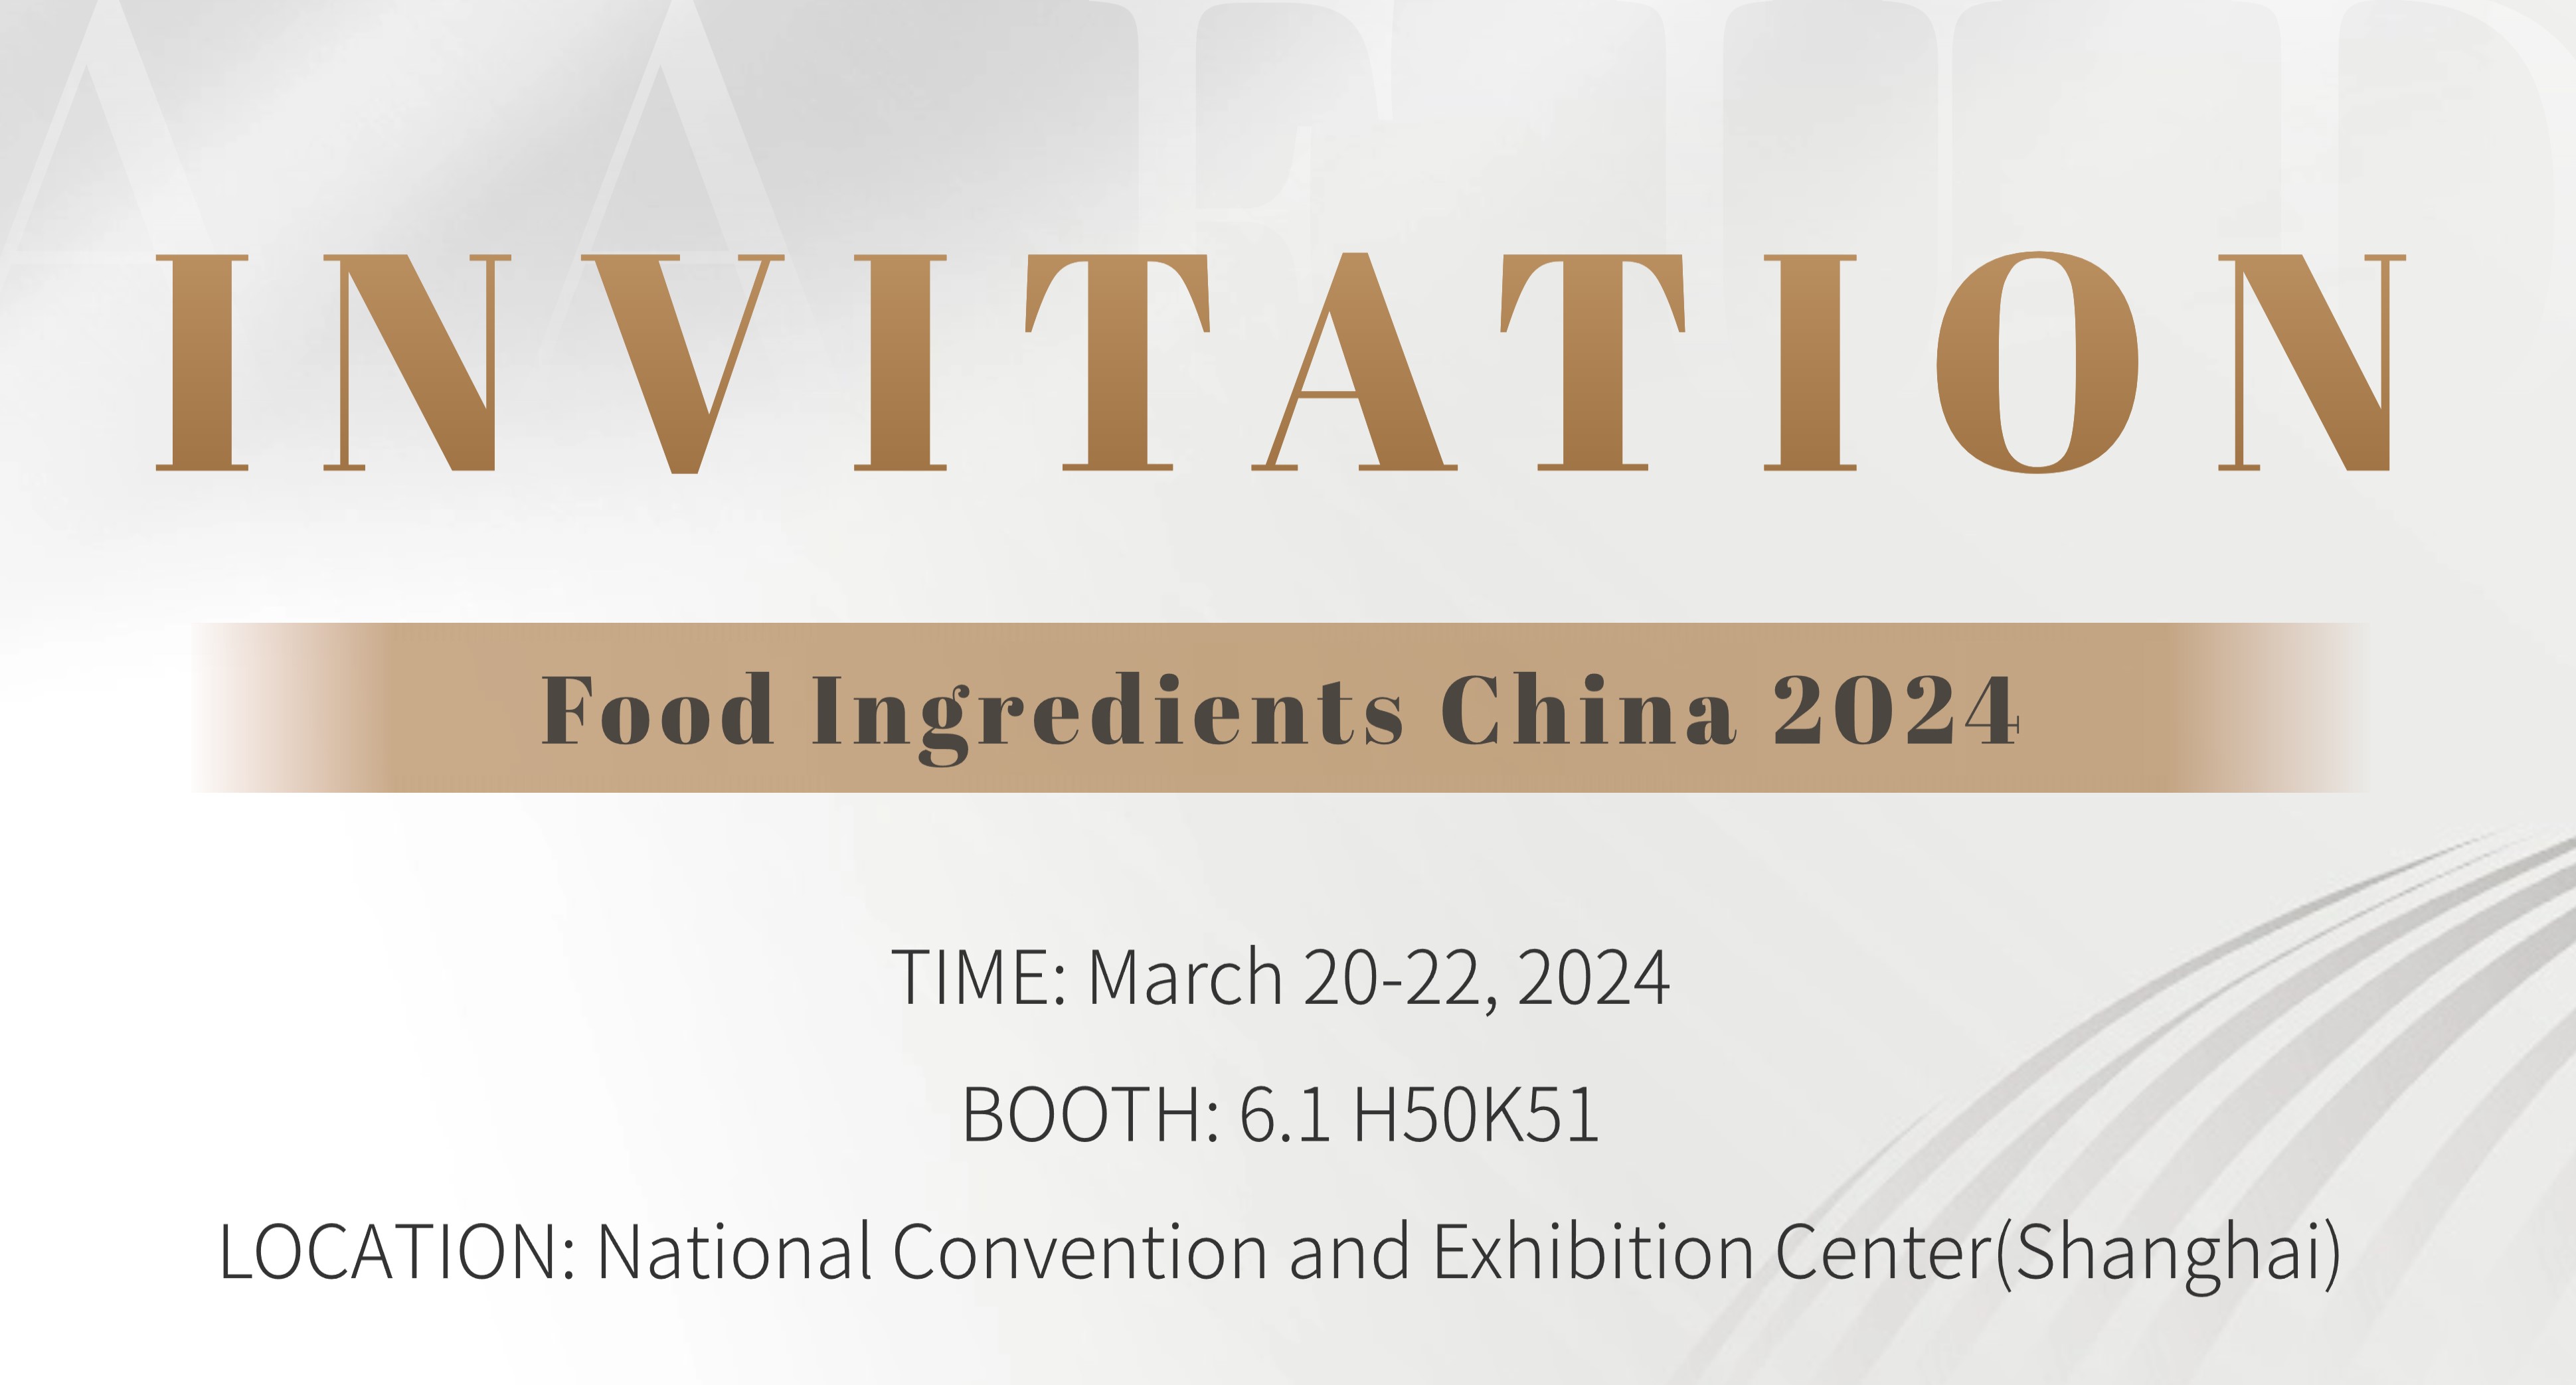 INVITATION DES Ingrédients Alimentaires Chine 2024 (FIC 2024)